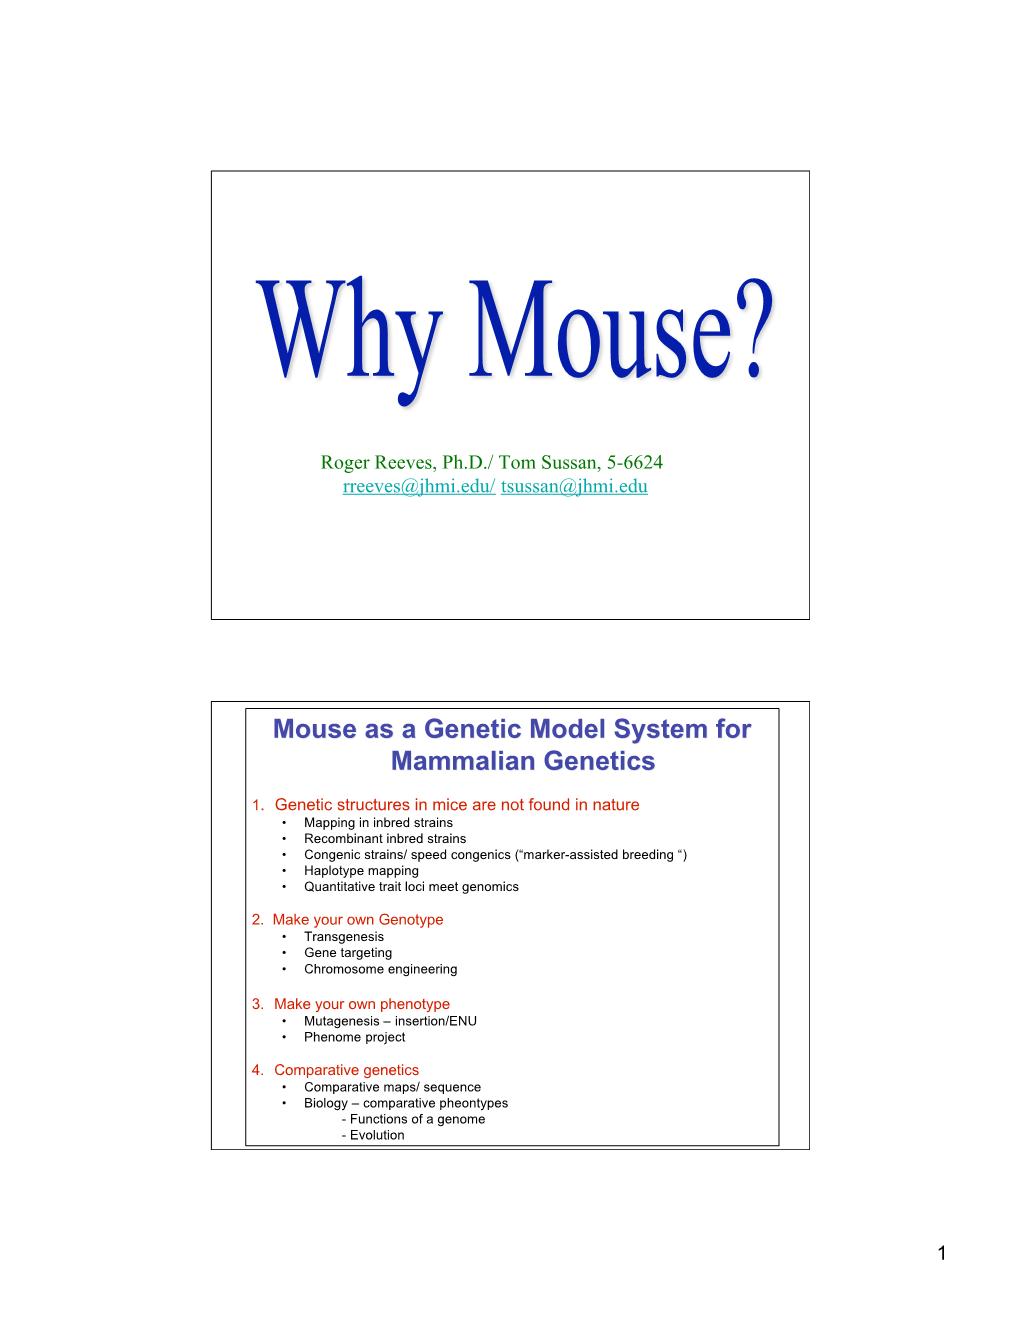 Mouse As a Genetic Model System for Mammalian Genetics